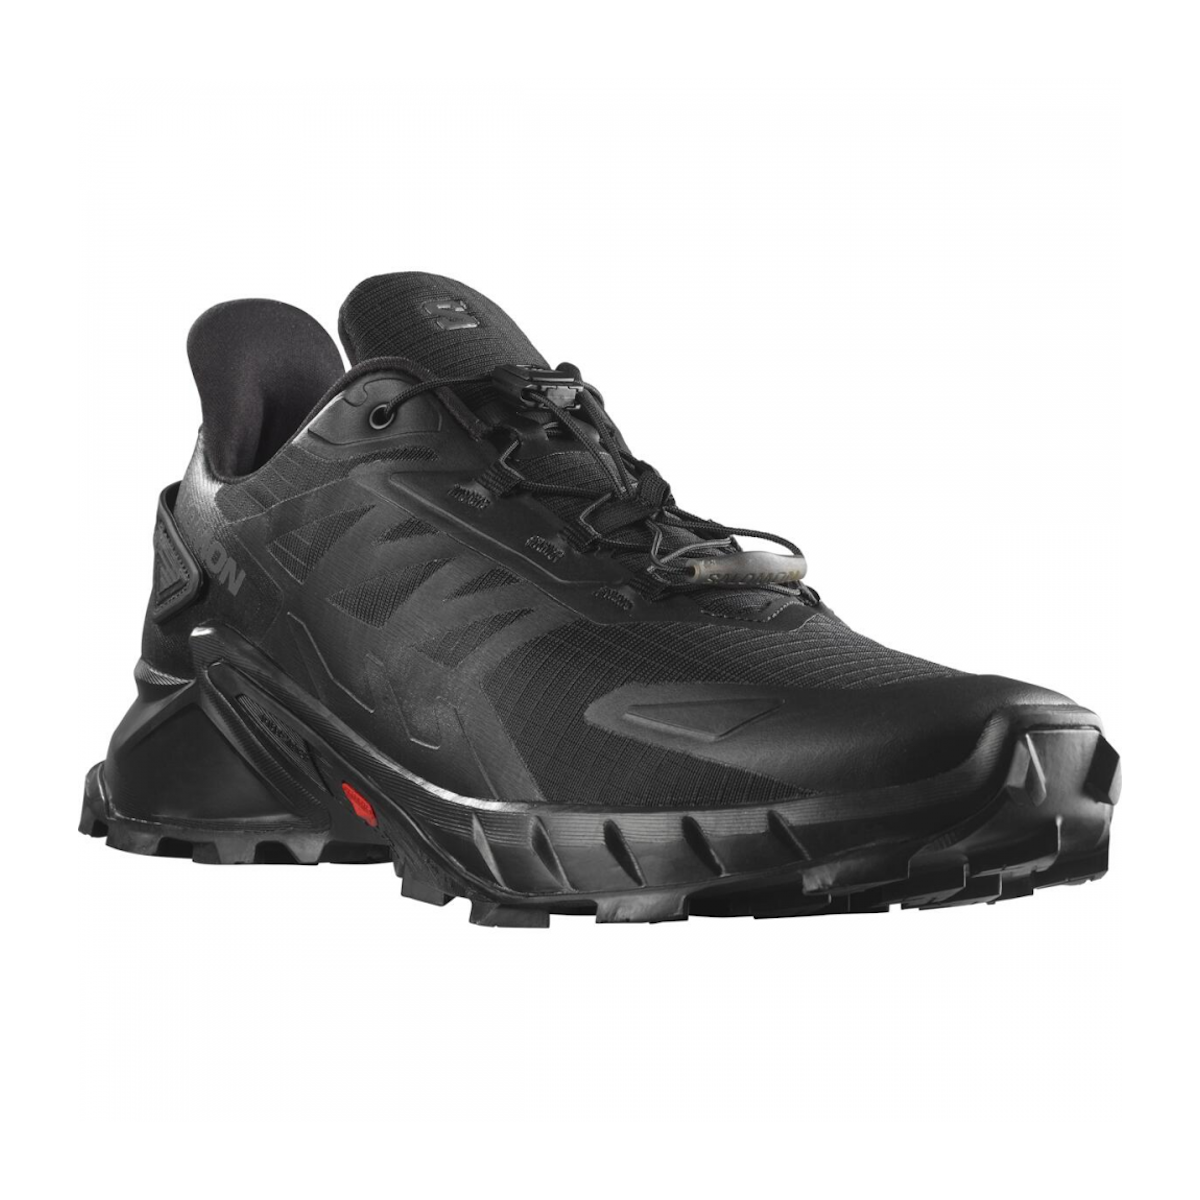 SALOMON SUPERCROSS 4 trail running shoes - black